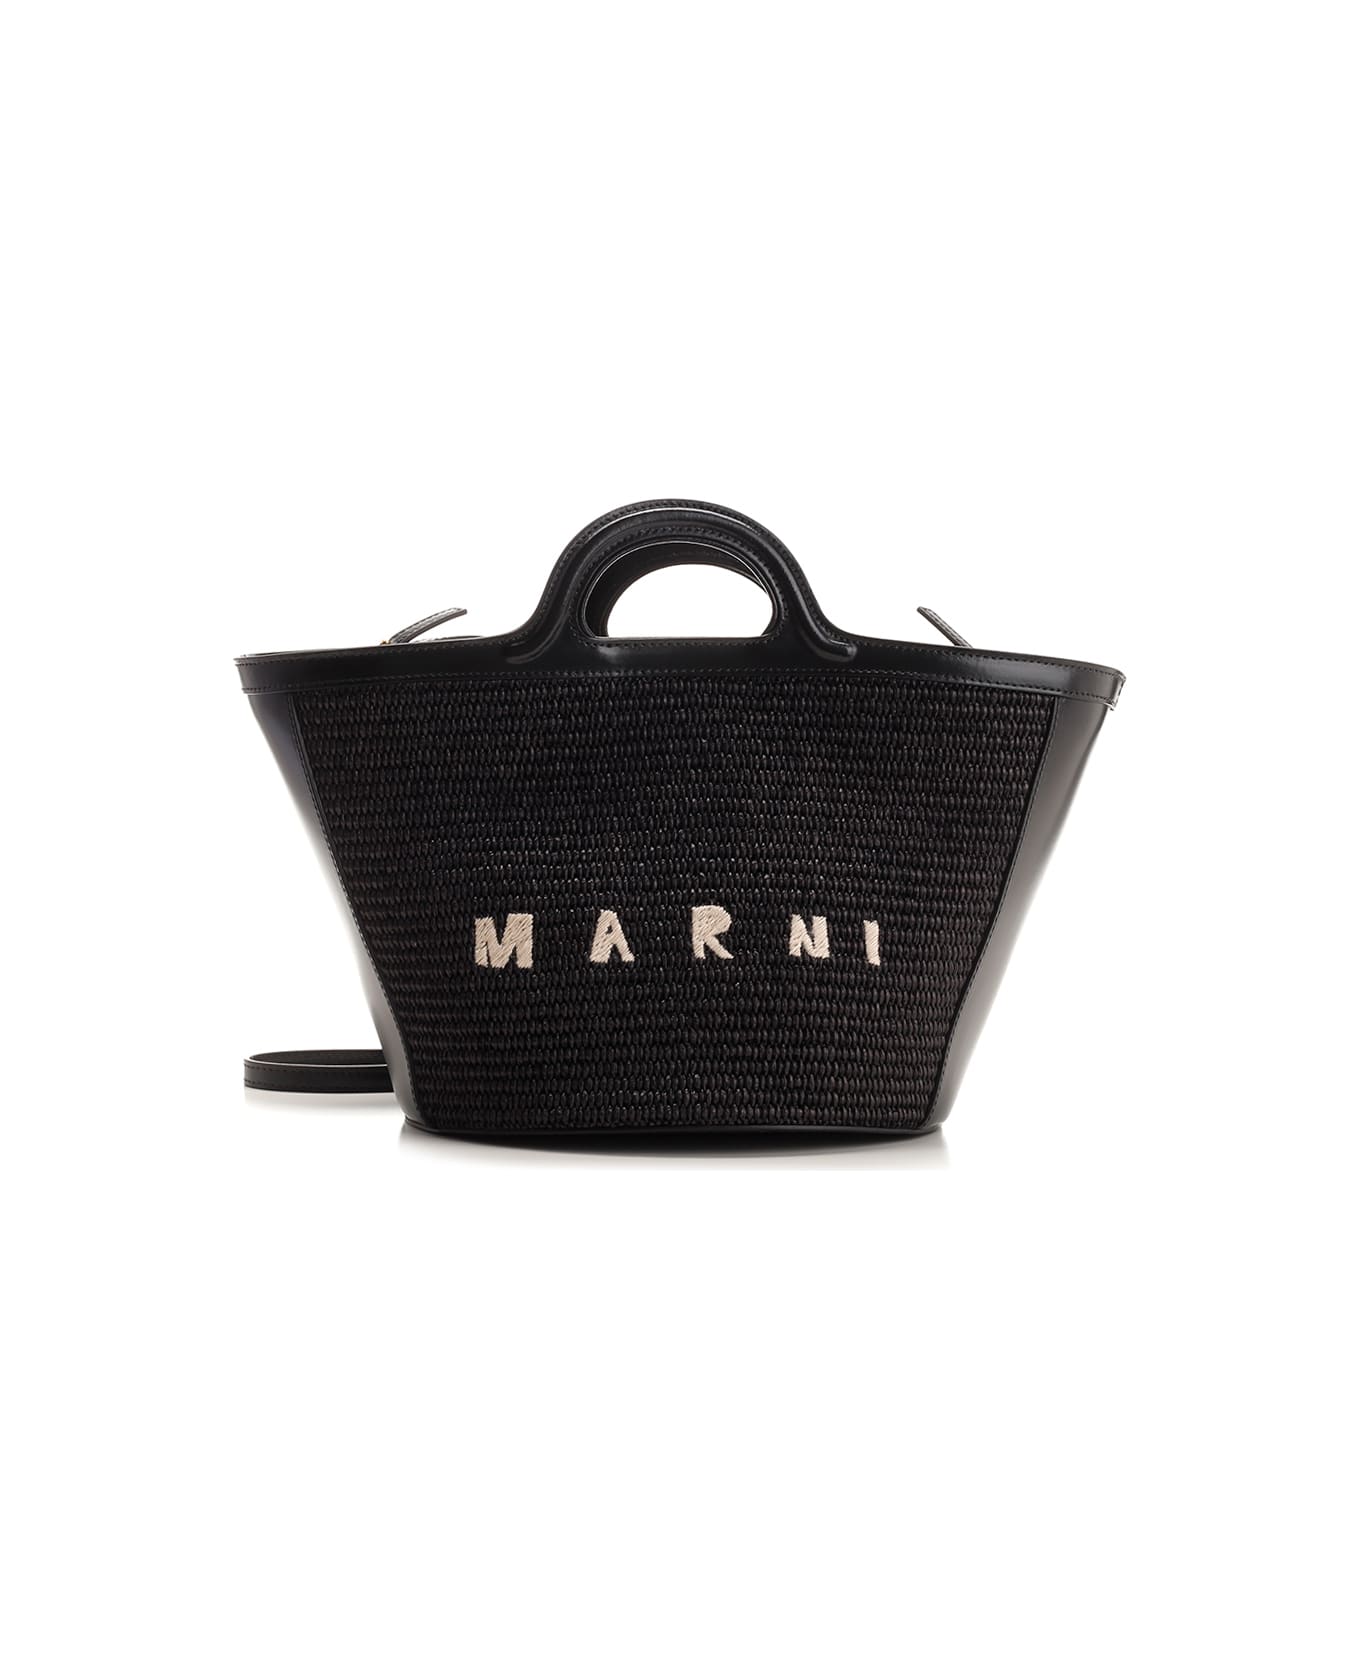 Marni Small 'tropicalia' Bag